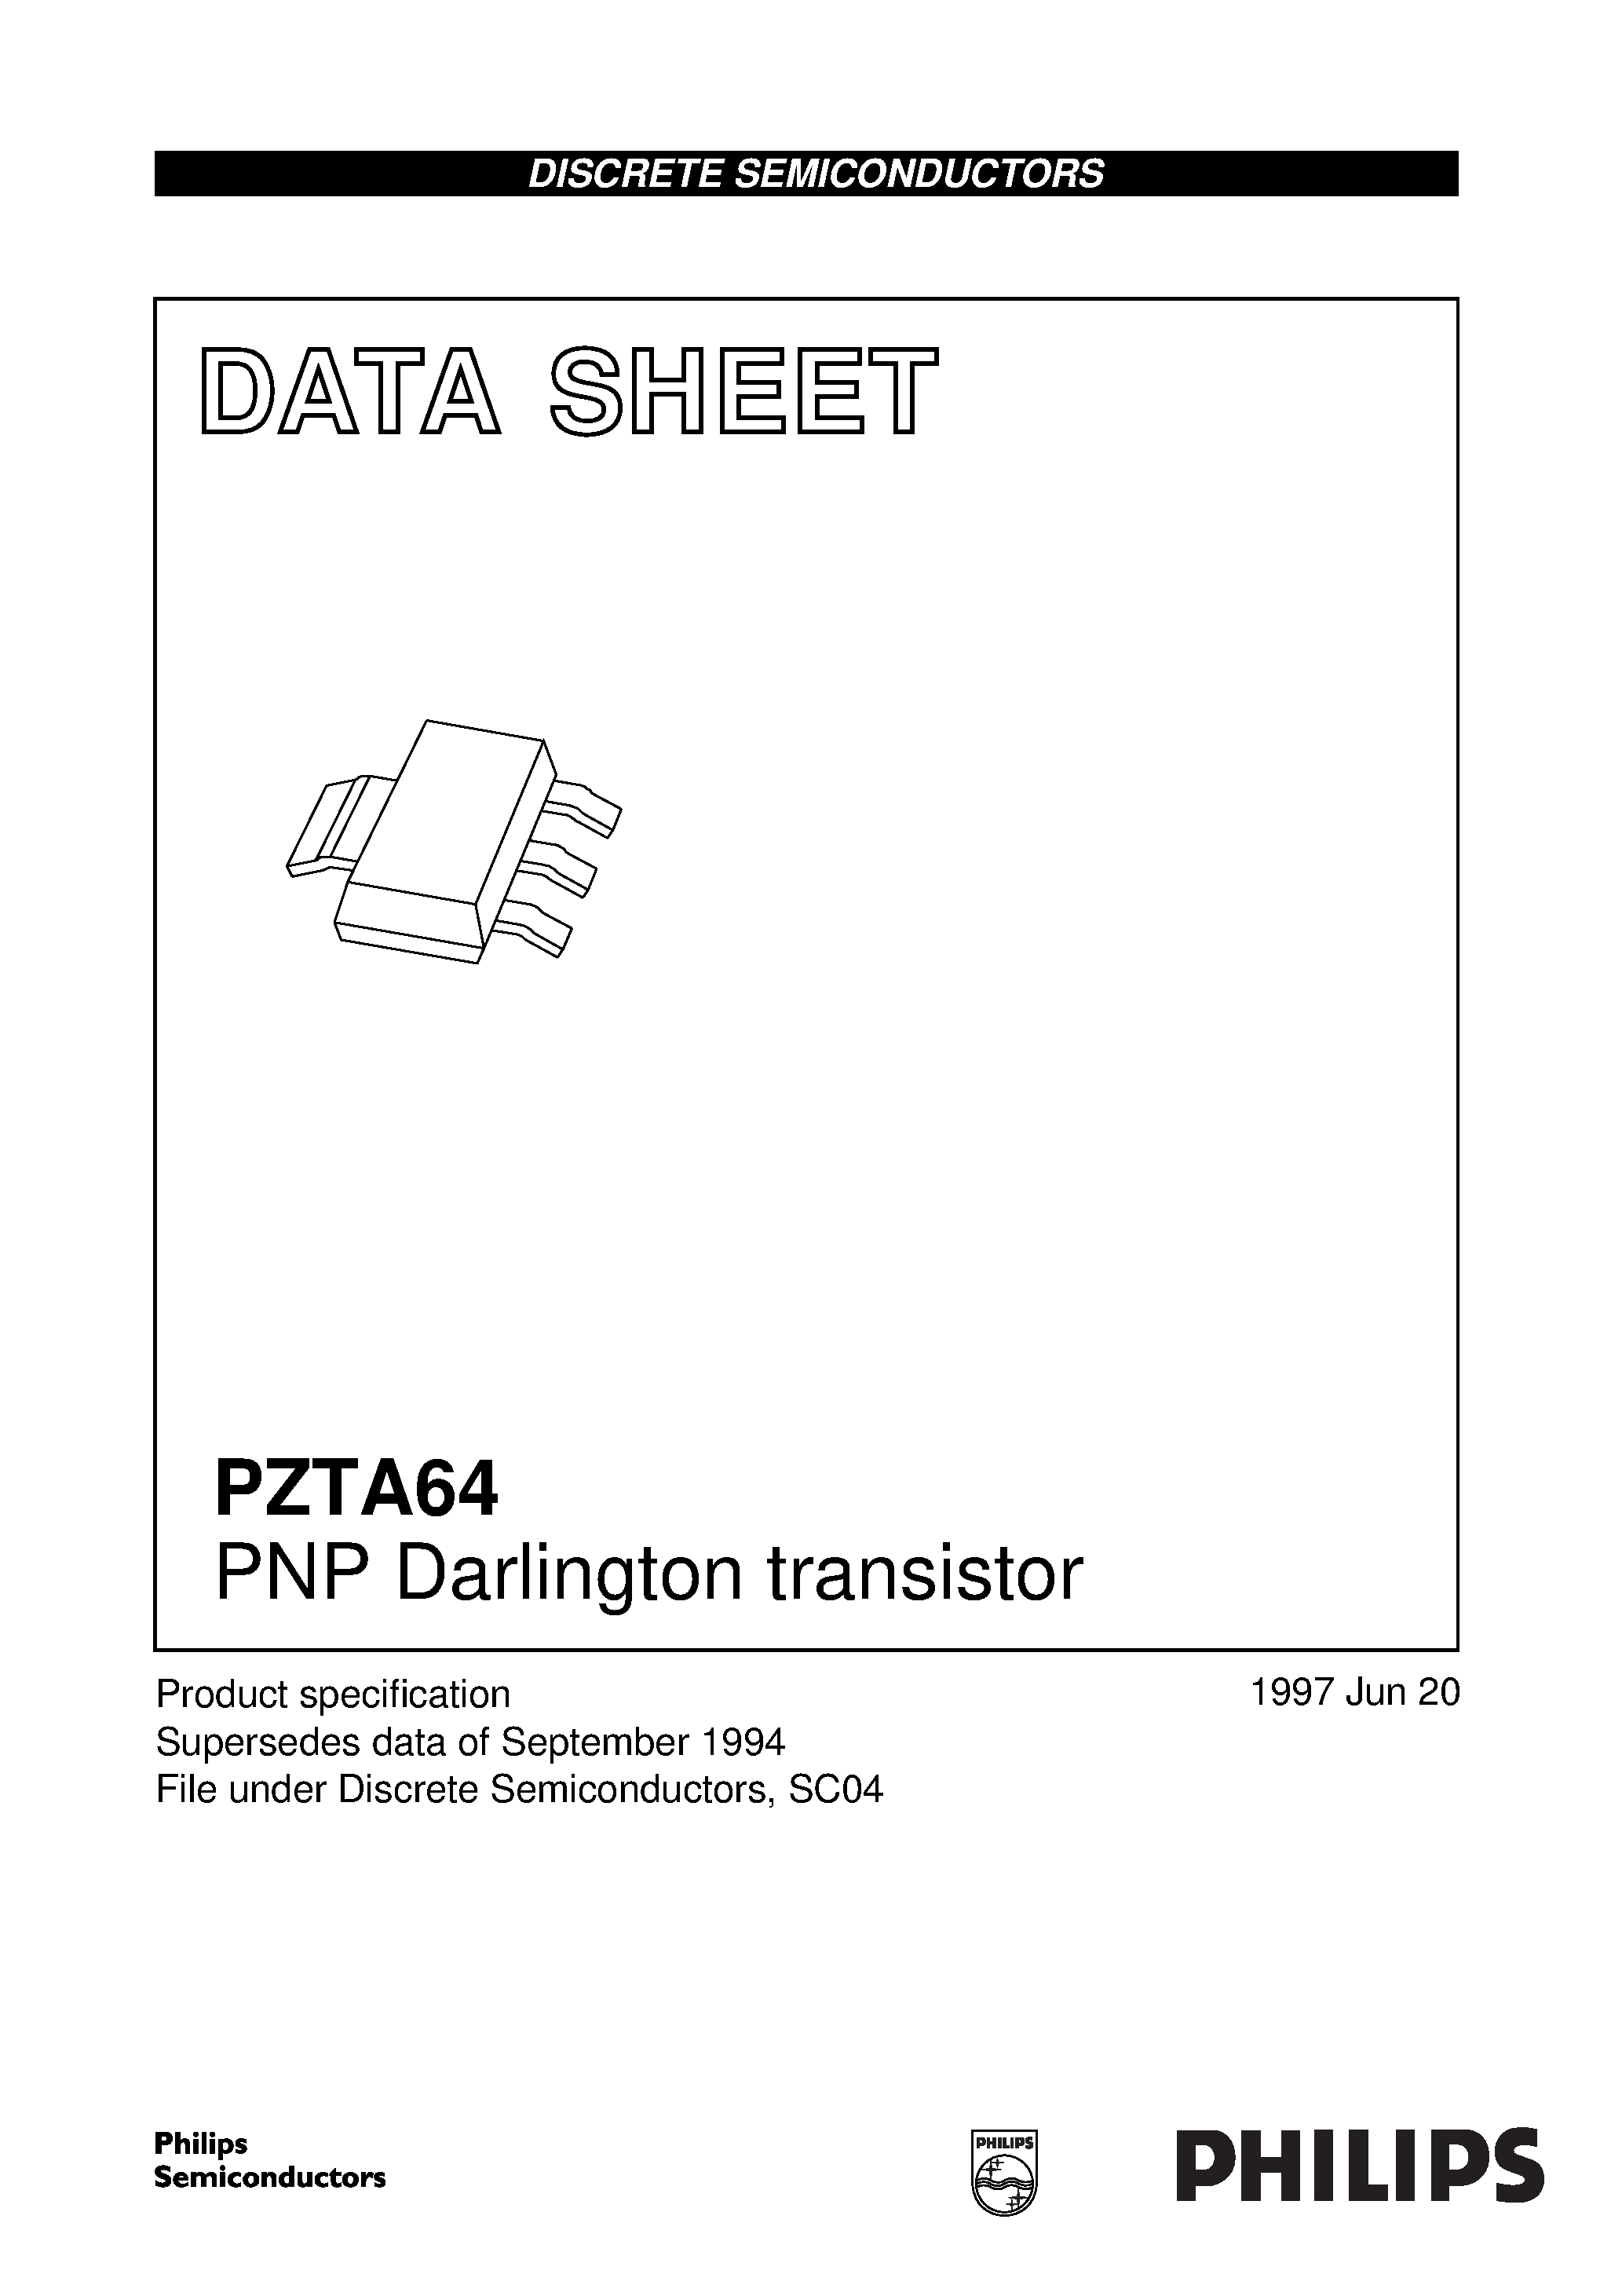 Даташит PZTA64 - PNP Darlington transistor страница 1